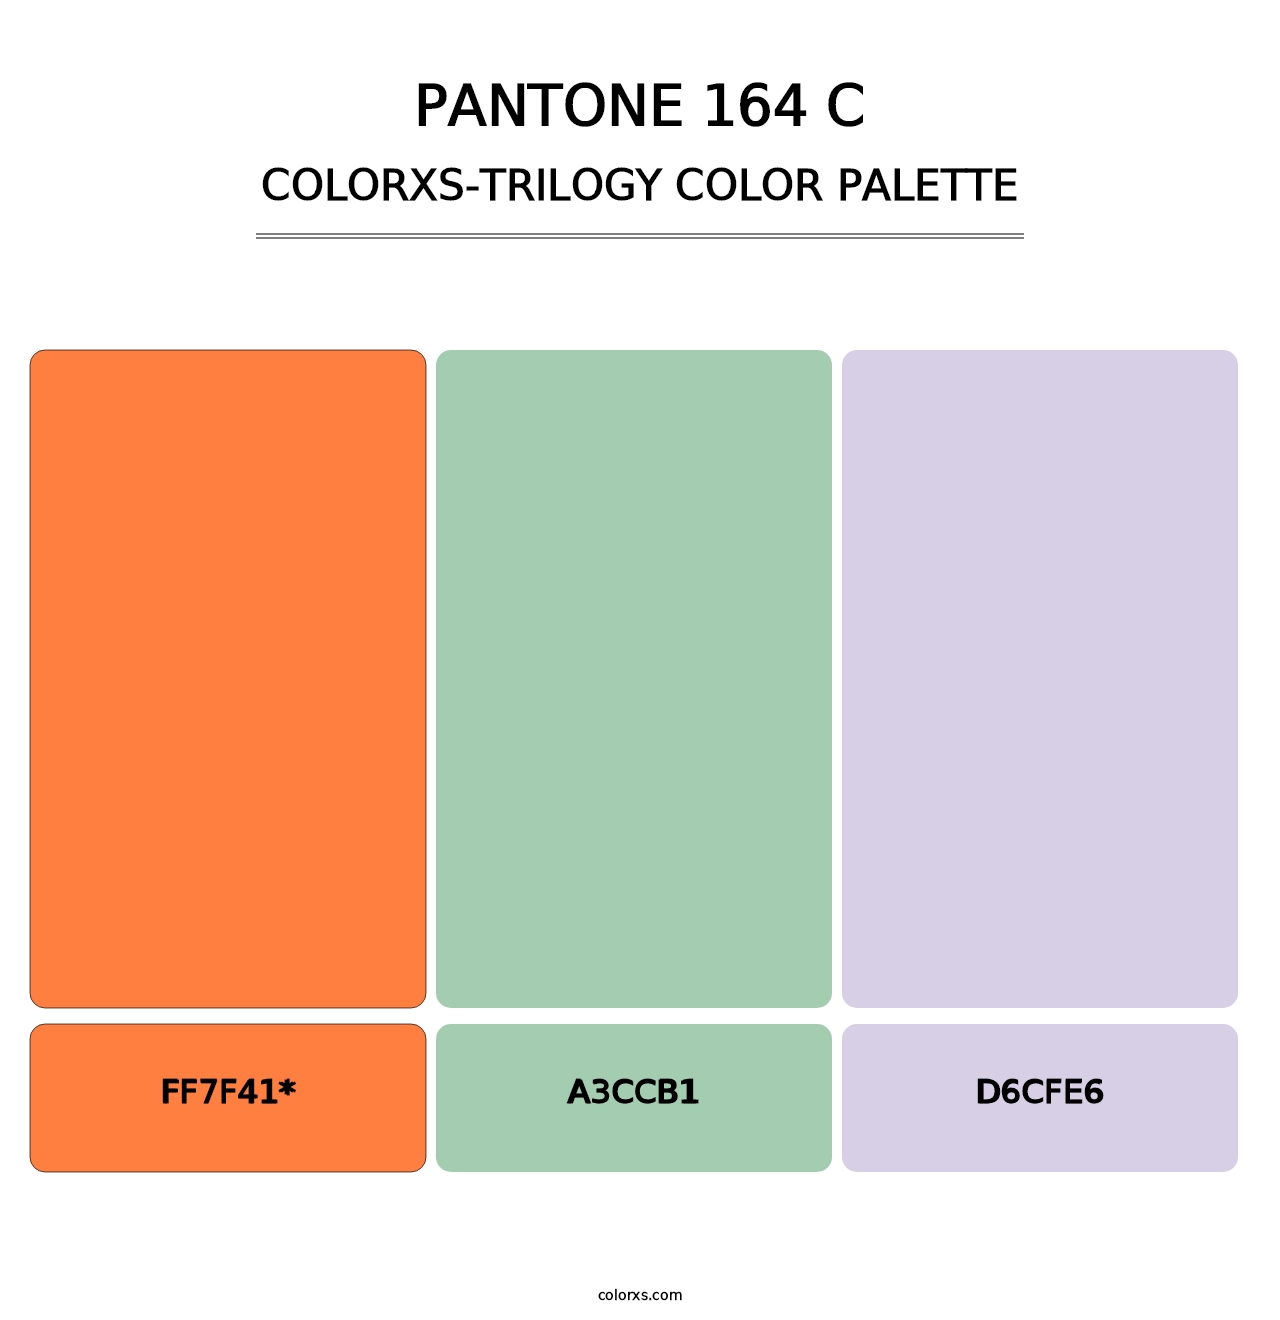 PANTONE 164 C - Colorxs Trilogy Palette